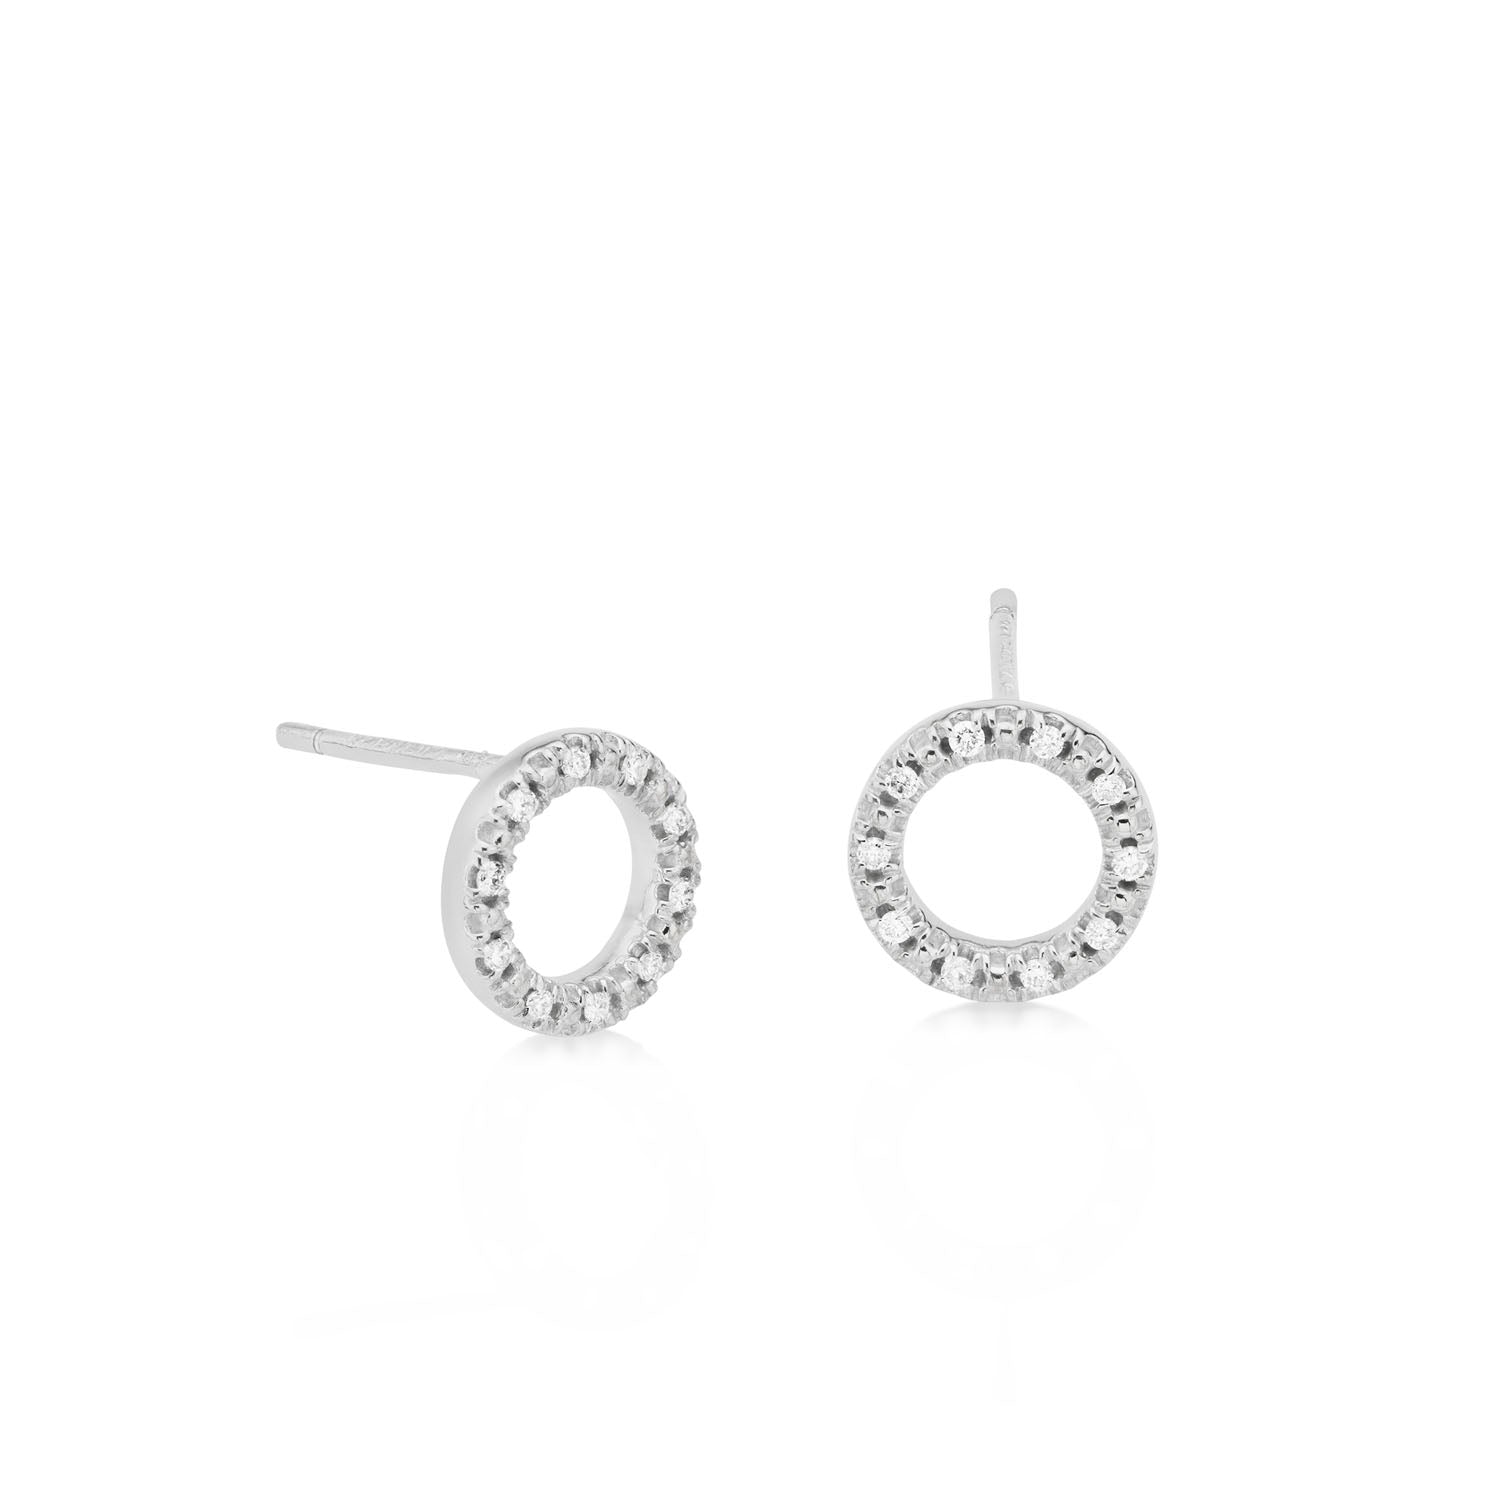 Hetta - diamond earrings